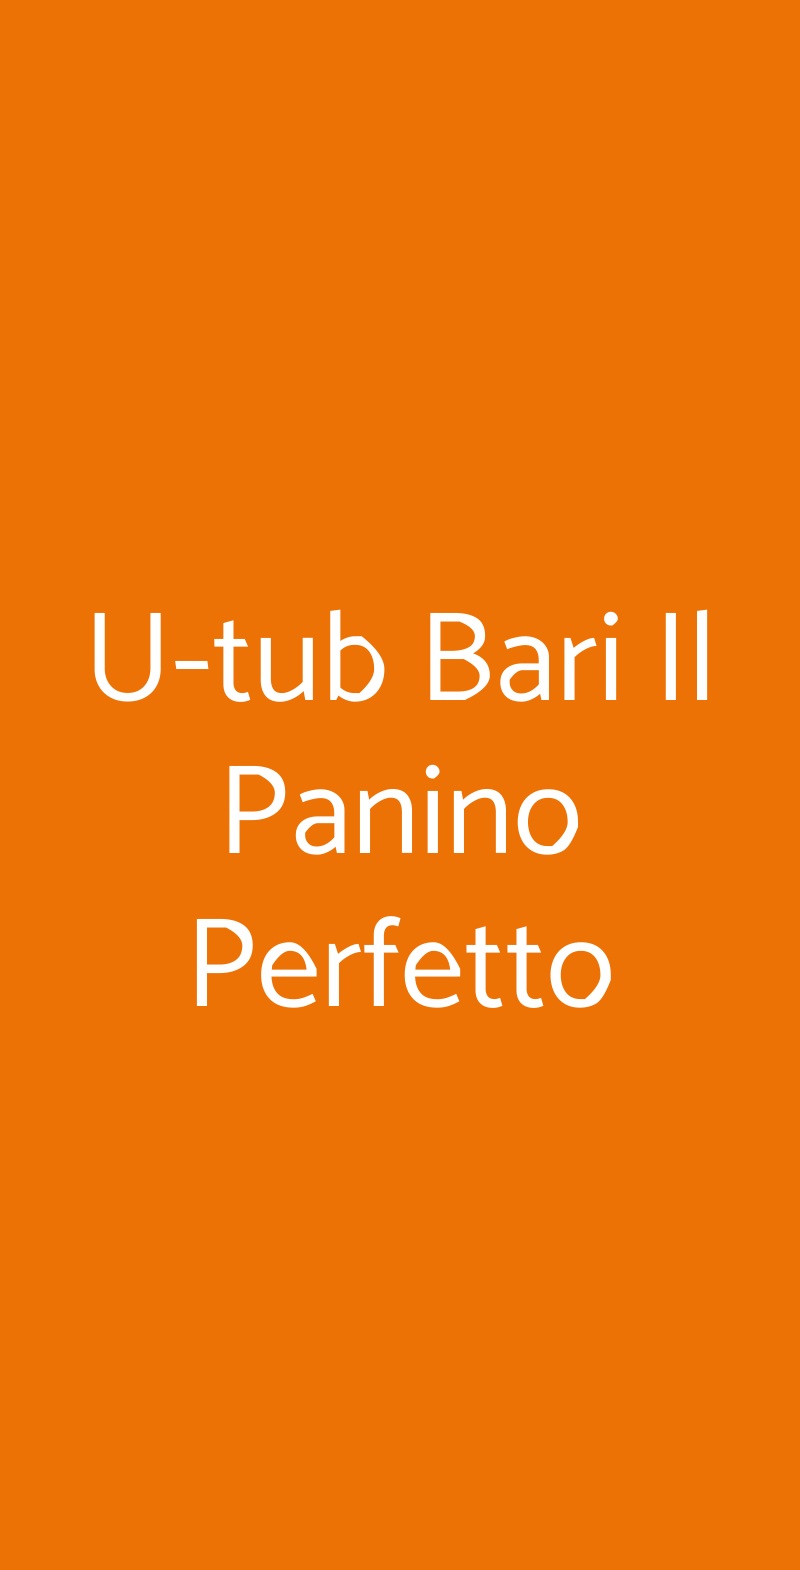 U-tub Bari Il Panino Perfetto Bari menù 1 pagina